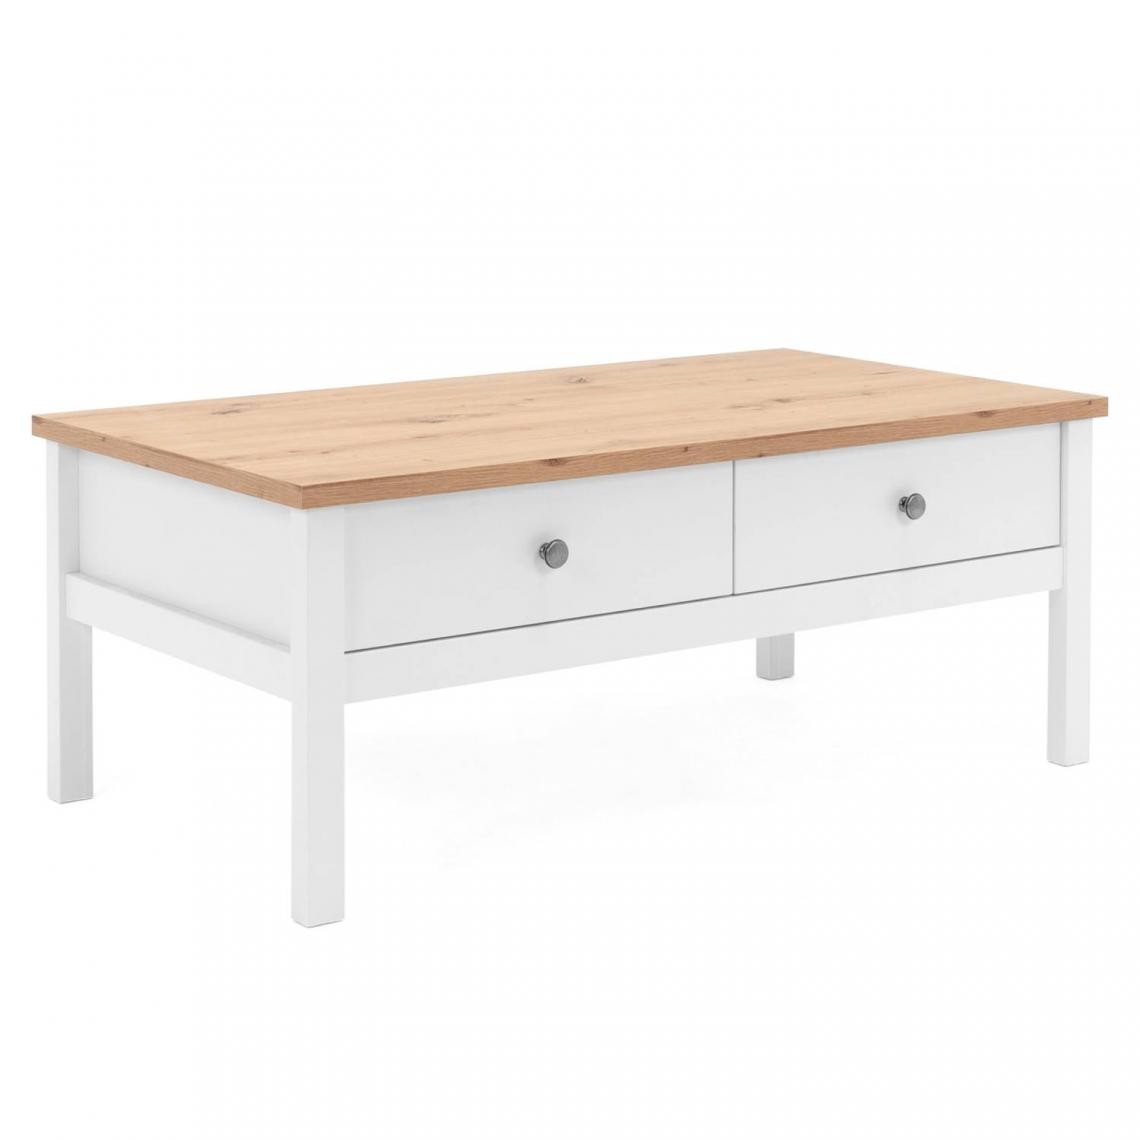 Pegane - Table basse en bois coloris naturel / blanc - Longueur 100 x Hauteur 40 x Profondeur 55 cm - Tables basses